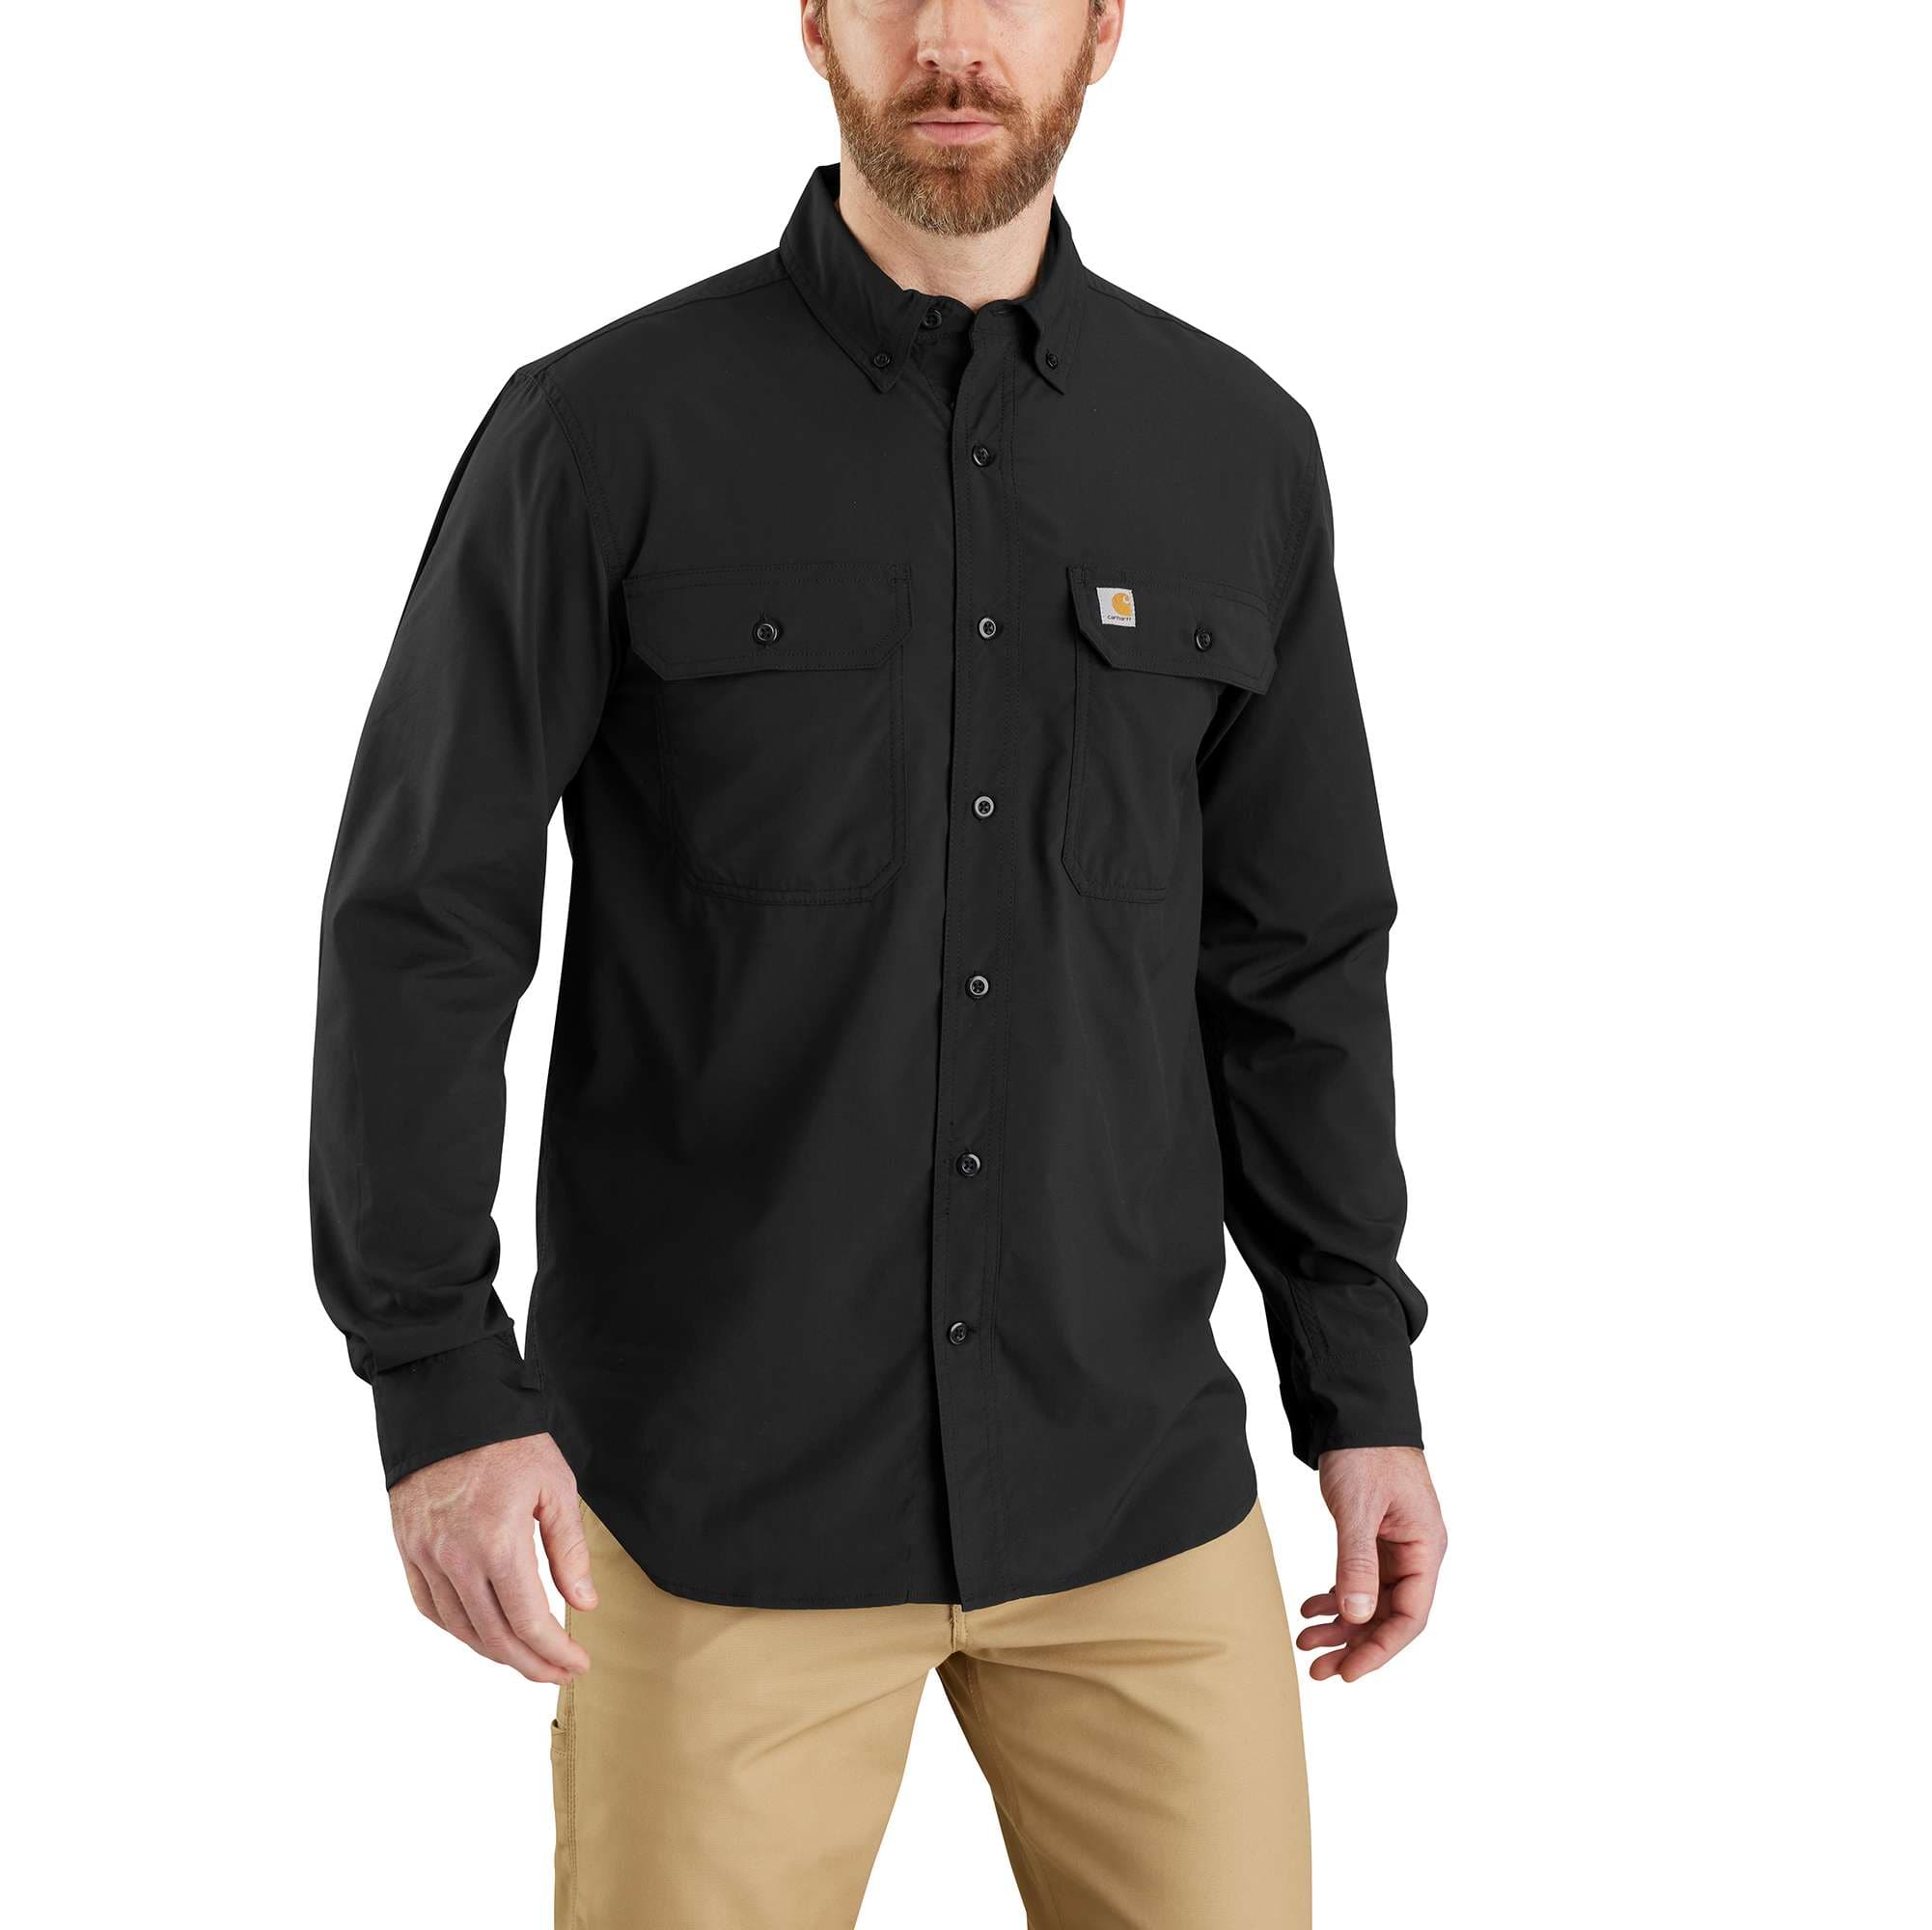 Carhartt Force® Relaxed Fit Lightweight Long- Sleeve Shirt